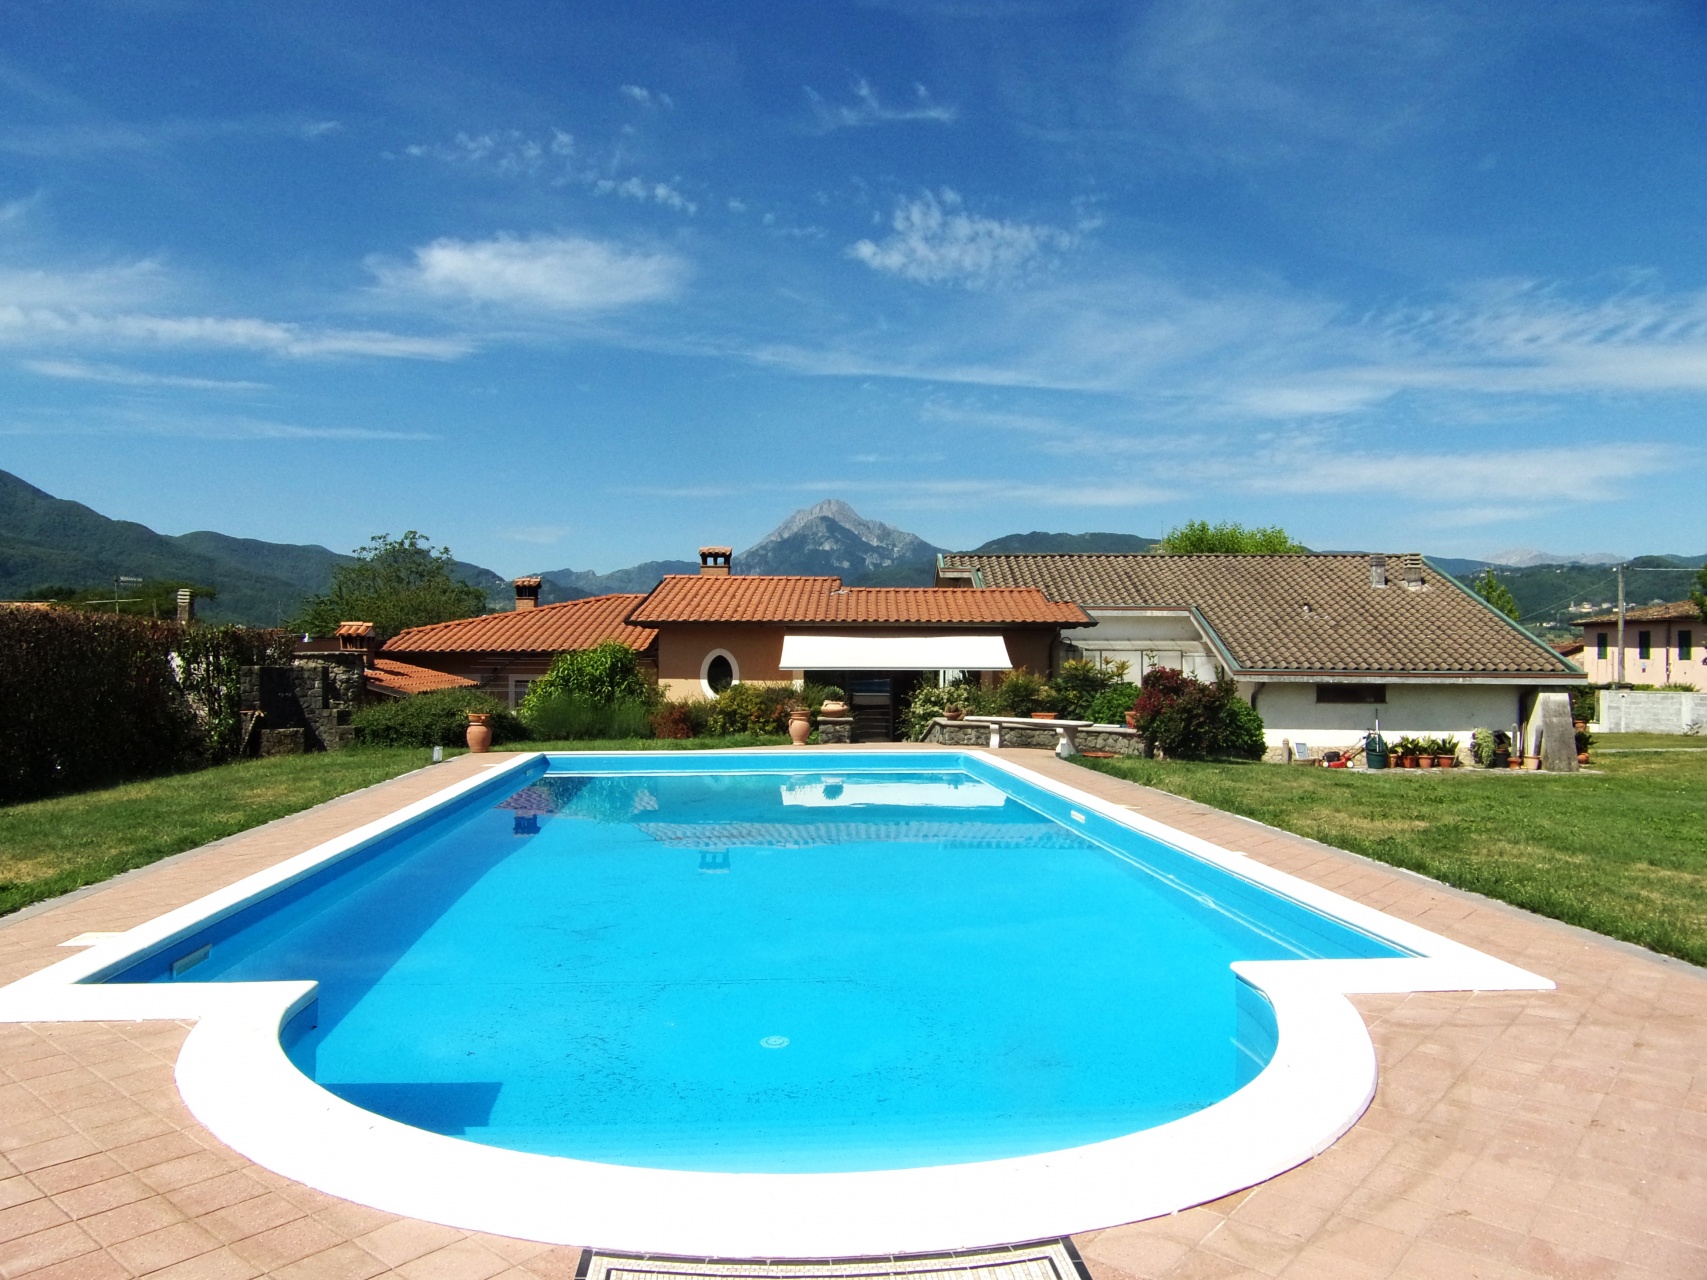 foto Villa indipendente, giardini, piscina. ||| Barga, Lucca.